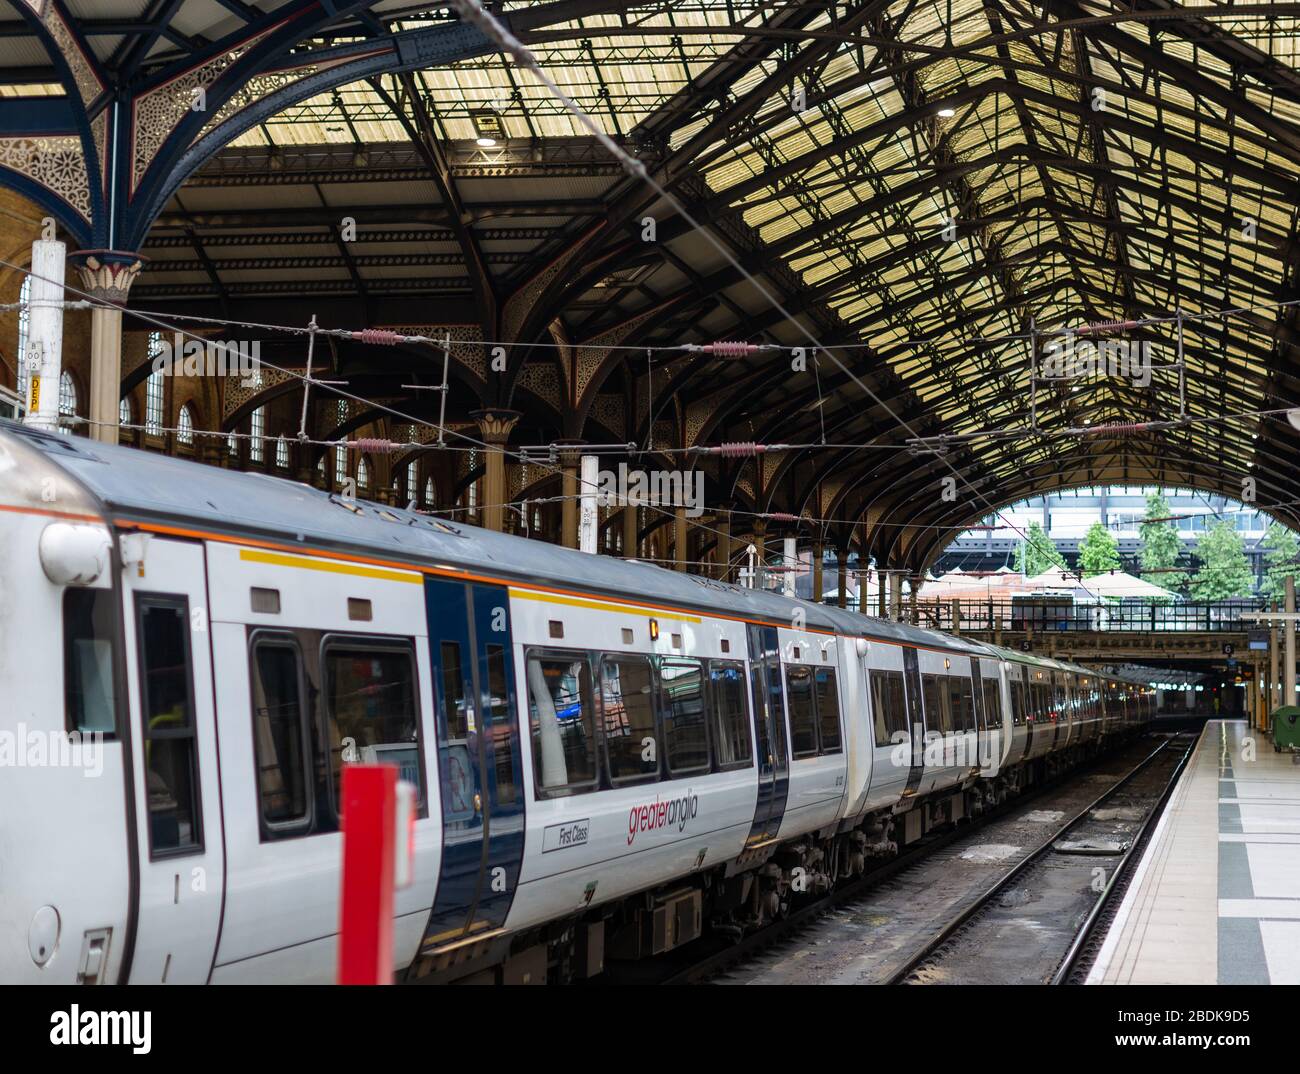 Un train se trouve à l'intérieur d'une gare. Le National Rail Service est largement utilisé dans toute l'Angleterre, des trajets quotidiens aux villes périphériques. Banque D'Images